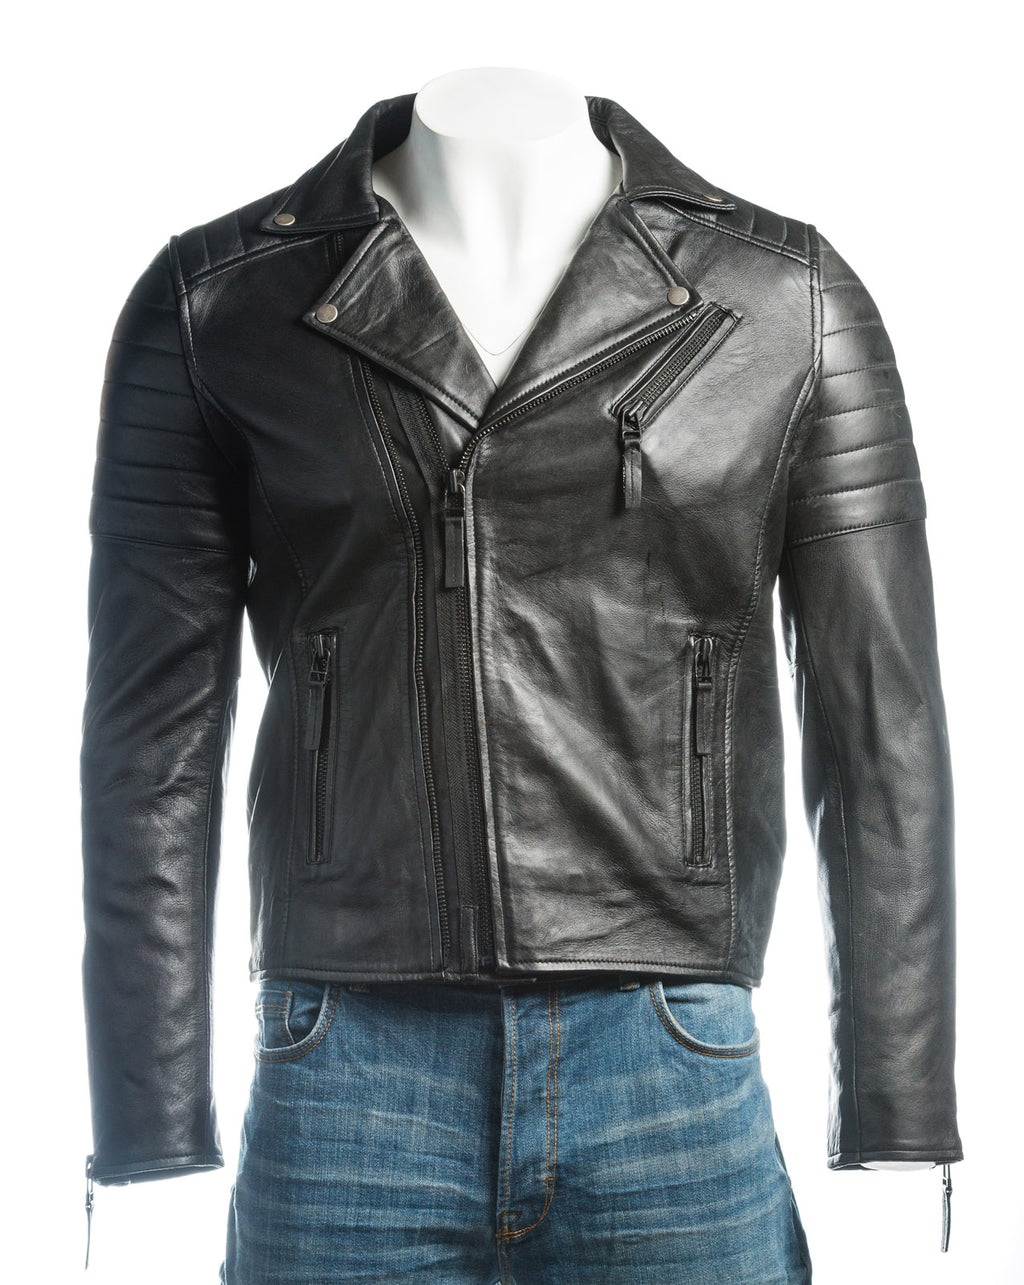 Men's Black Vintage Look Biker Style Leather Jacket: Placido